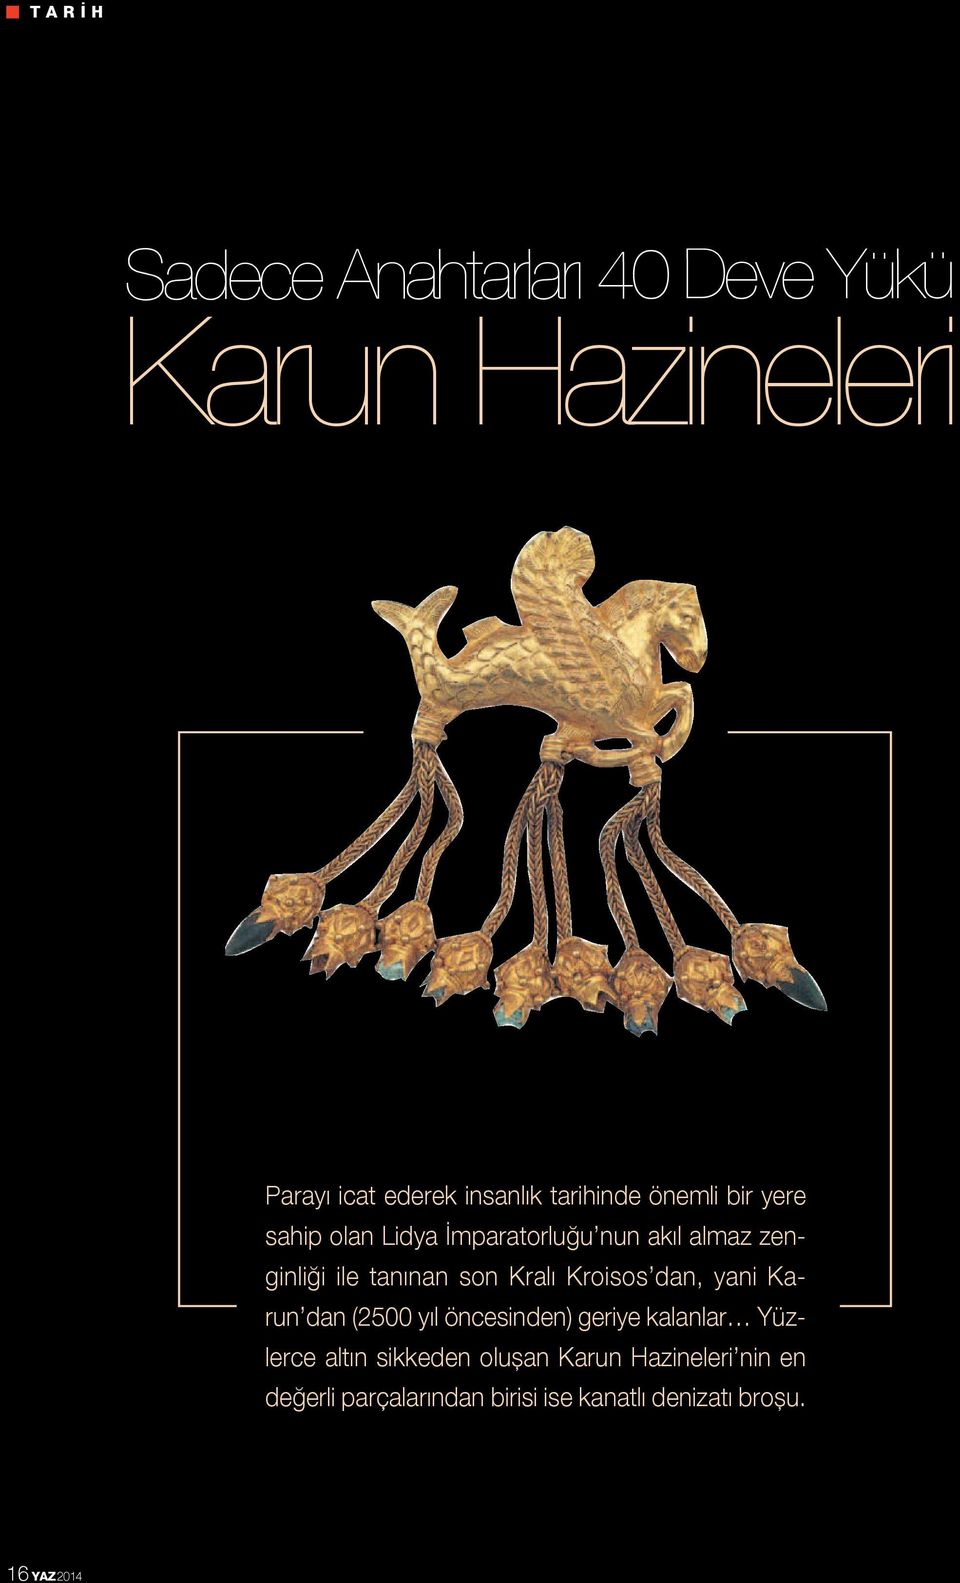 son Kralı Kroisos dan, yani Karun dan (2500 yıl öncesinden) geriye kalanlar Yüzlerce altın